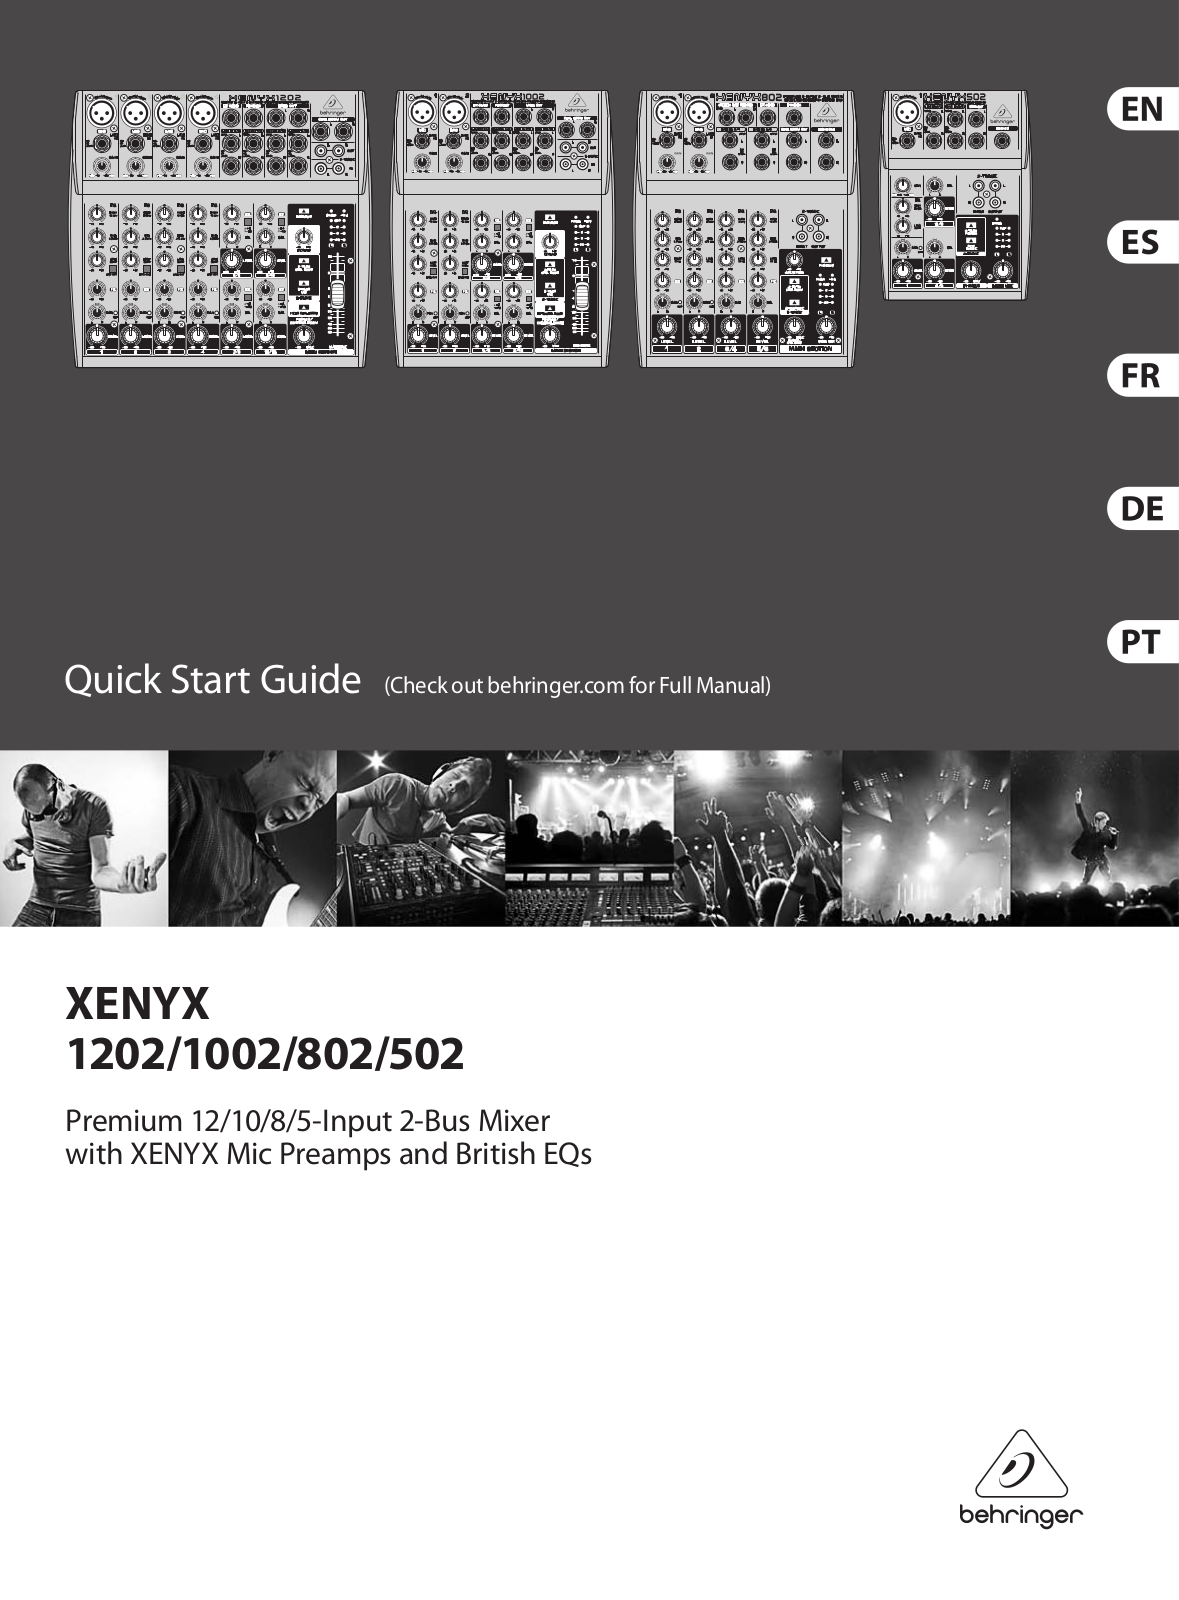 Behringer Xenyx 502, Xenyx 802, Xenyx 1002, Xenyx 1202 Quick Start Guide